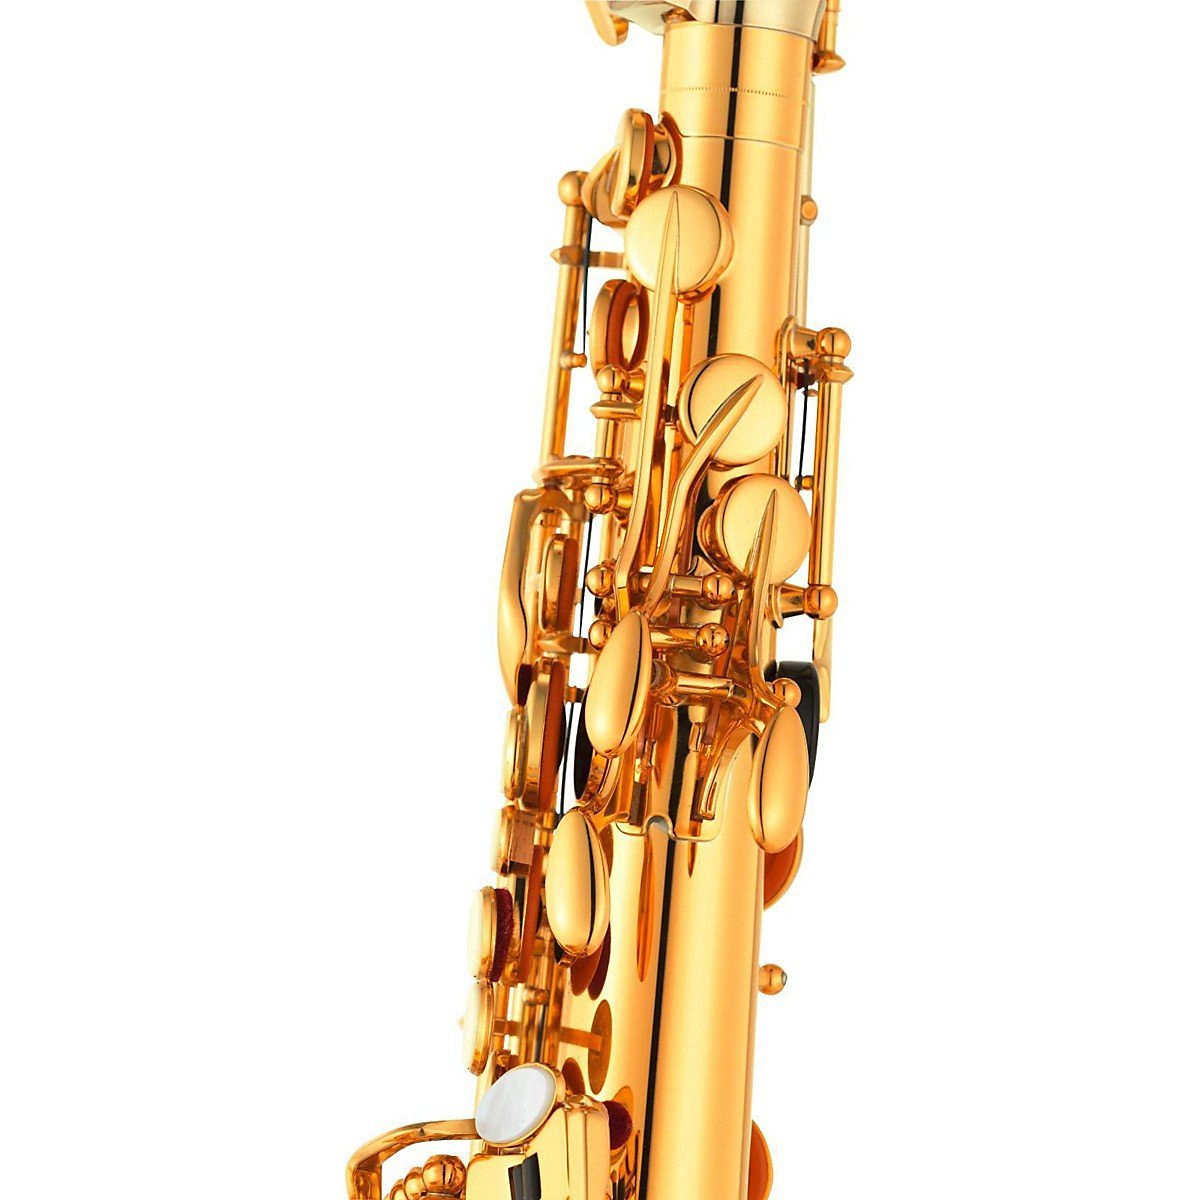 Yamaha YAS-875EXII Custom EX Alto Saxophone in lacquered finish